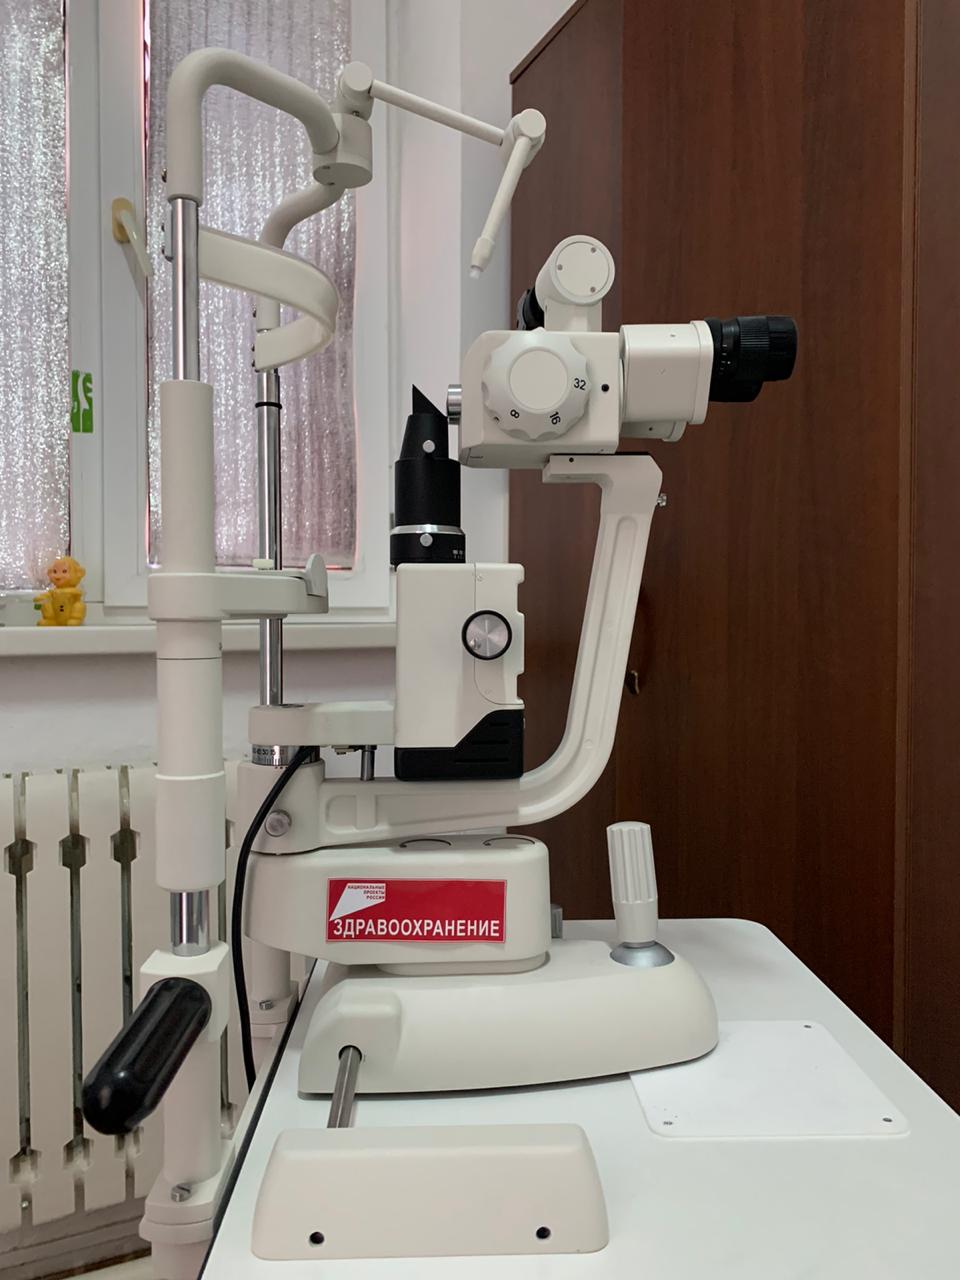 ЧЕЧНЯ. В Наурской детской поликлинике установили новое оборудование